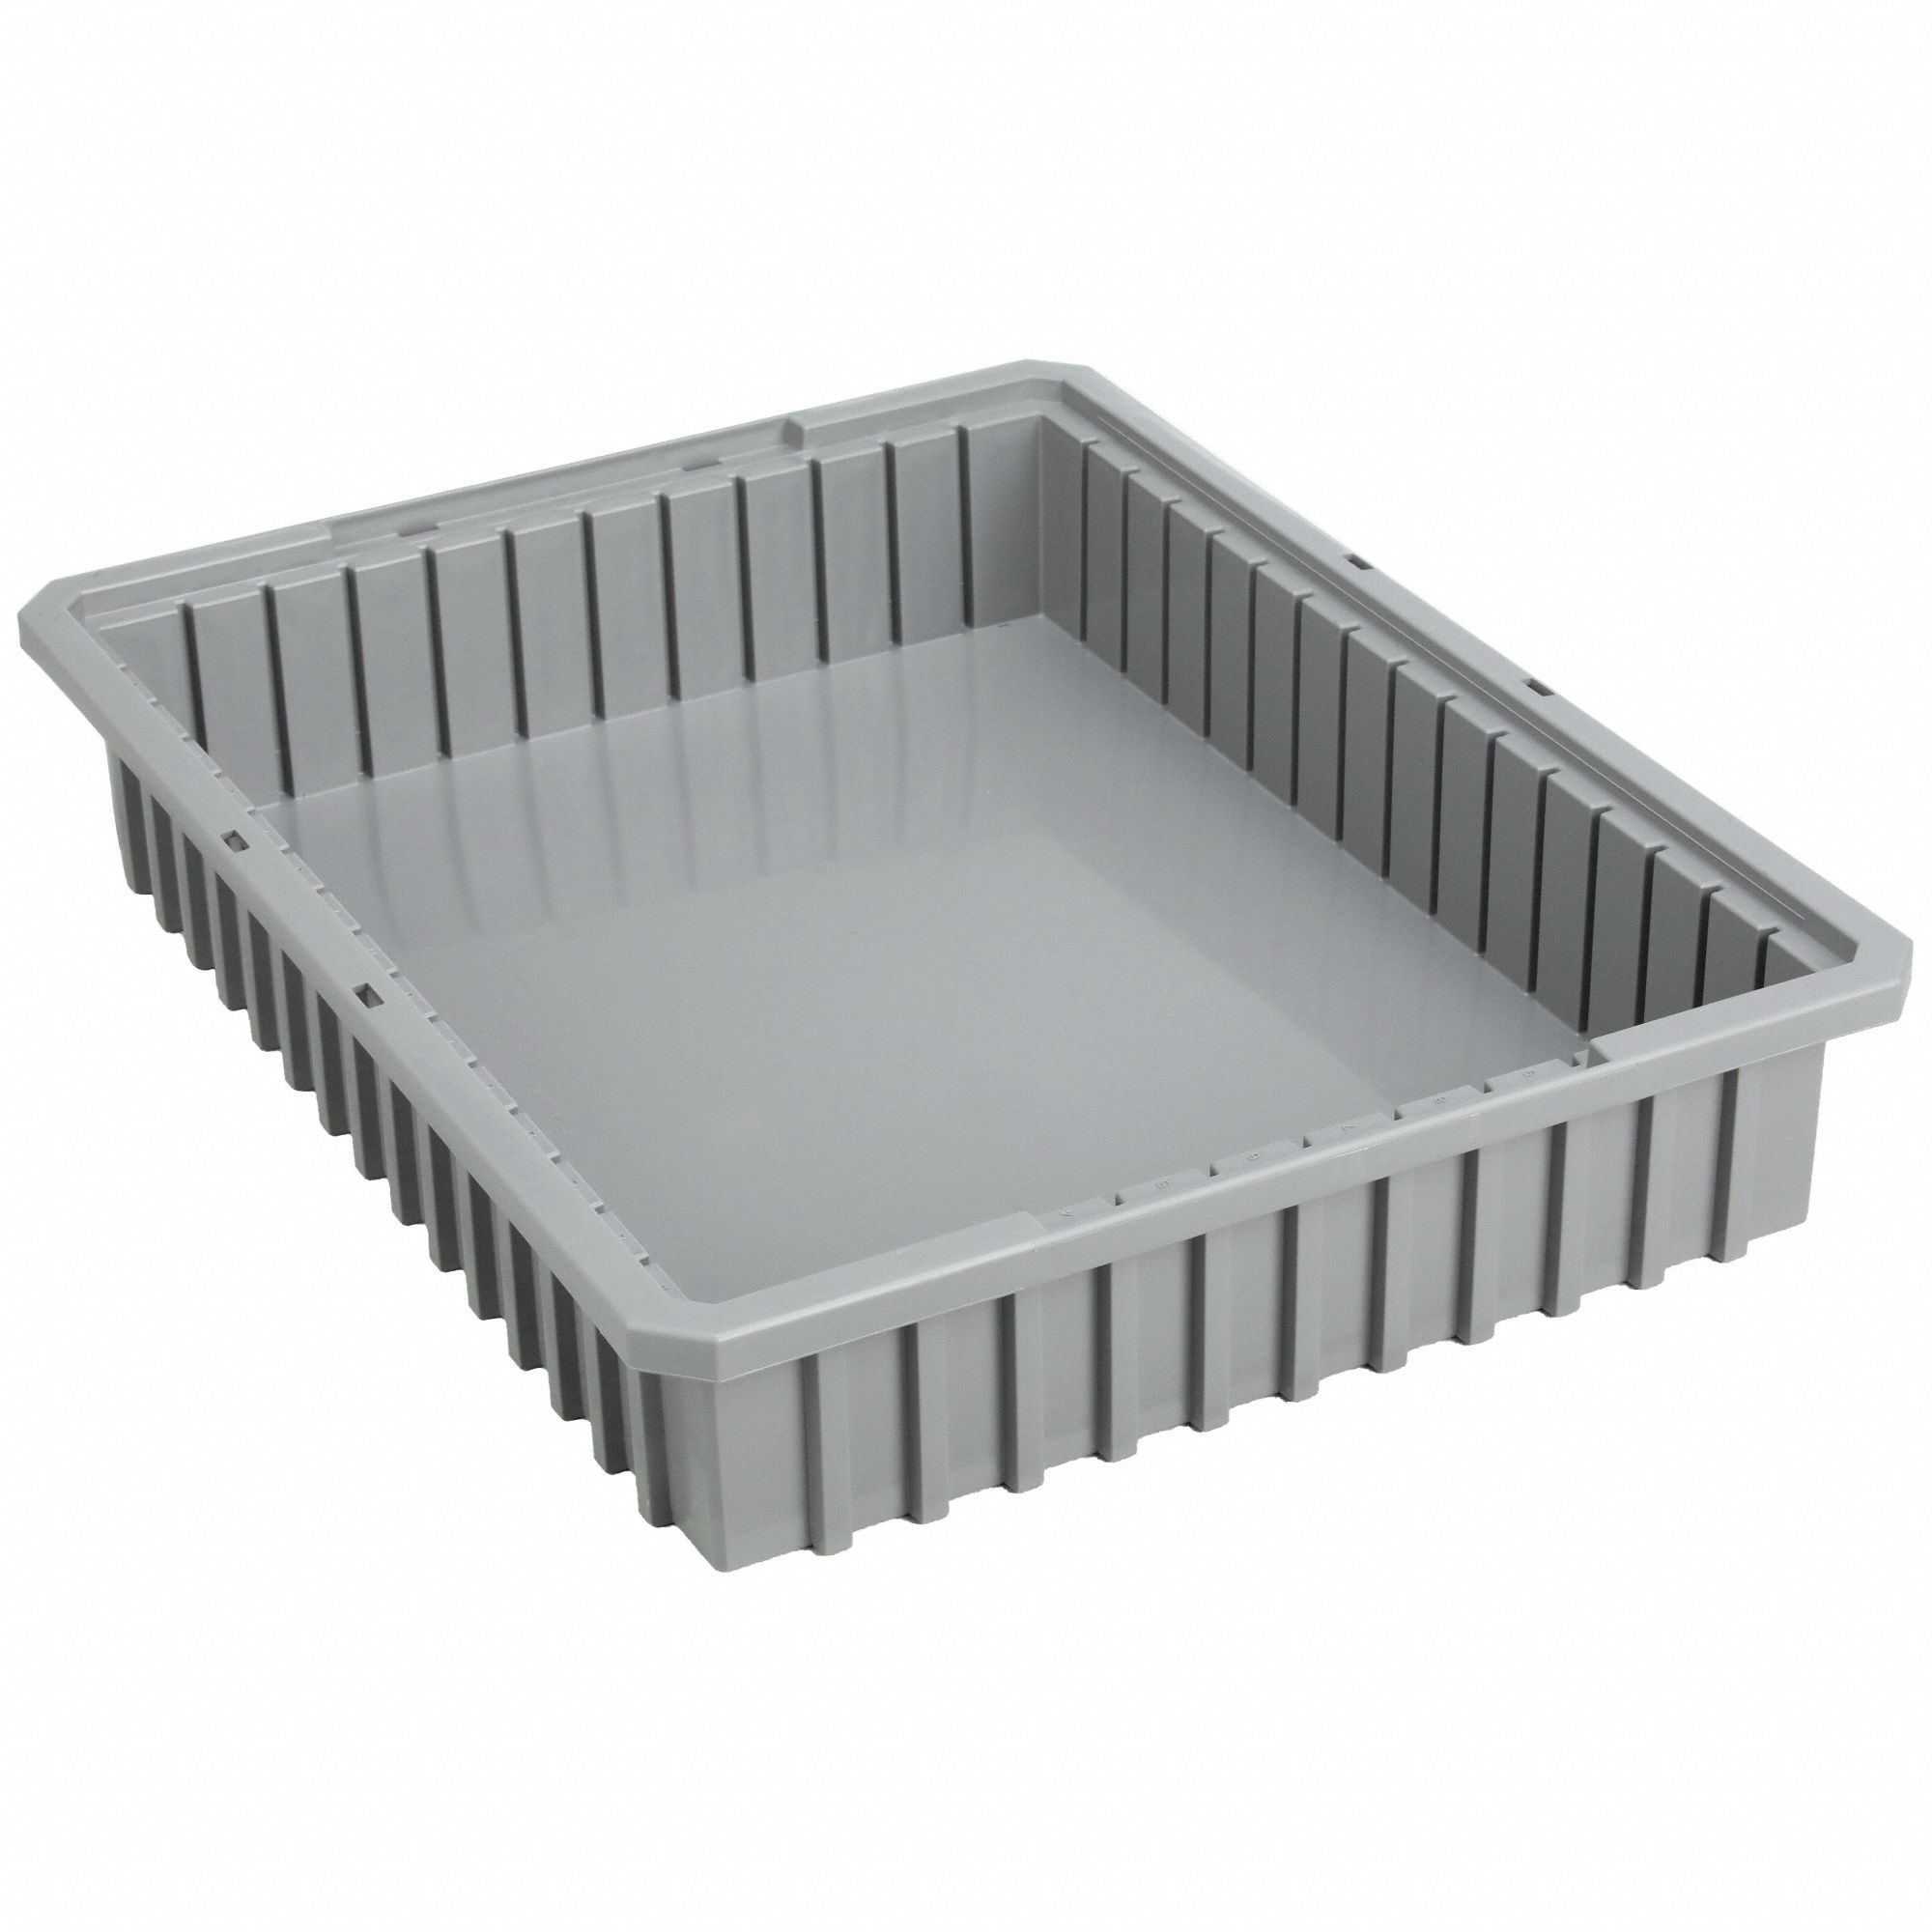 AKRO-MILS Divider Box: 0.61 cu ft, 22 3/8 in x 17 3/8 in x 4 in, Gray,  Plastic